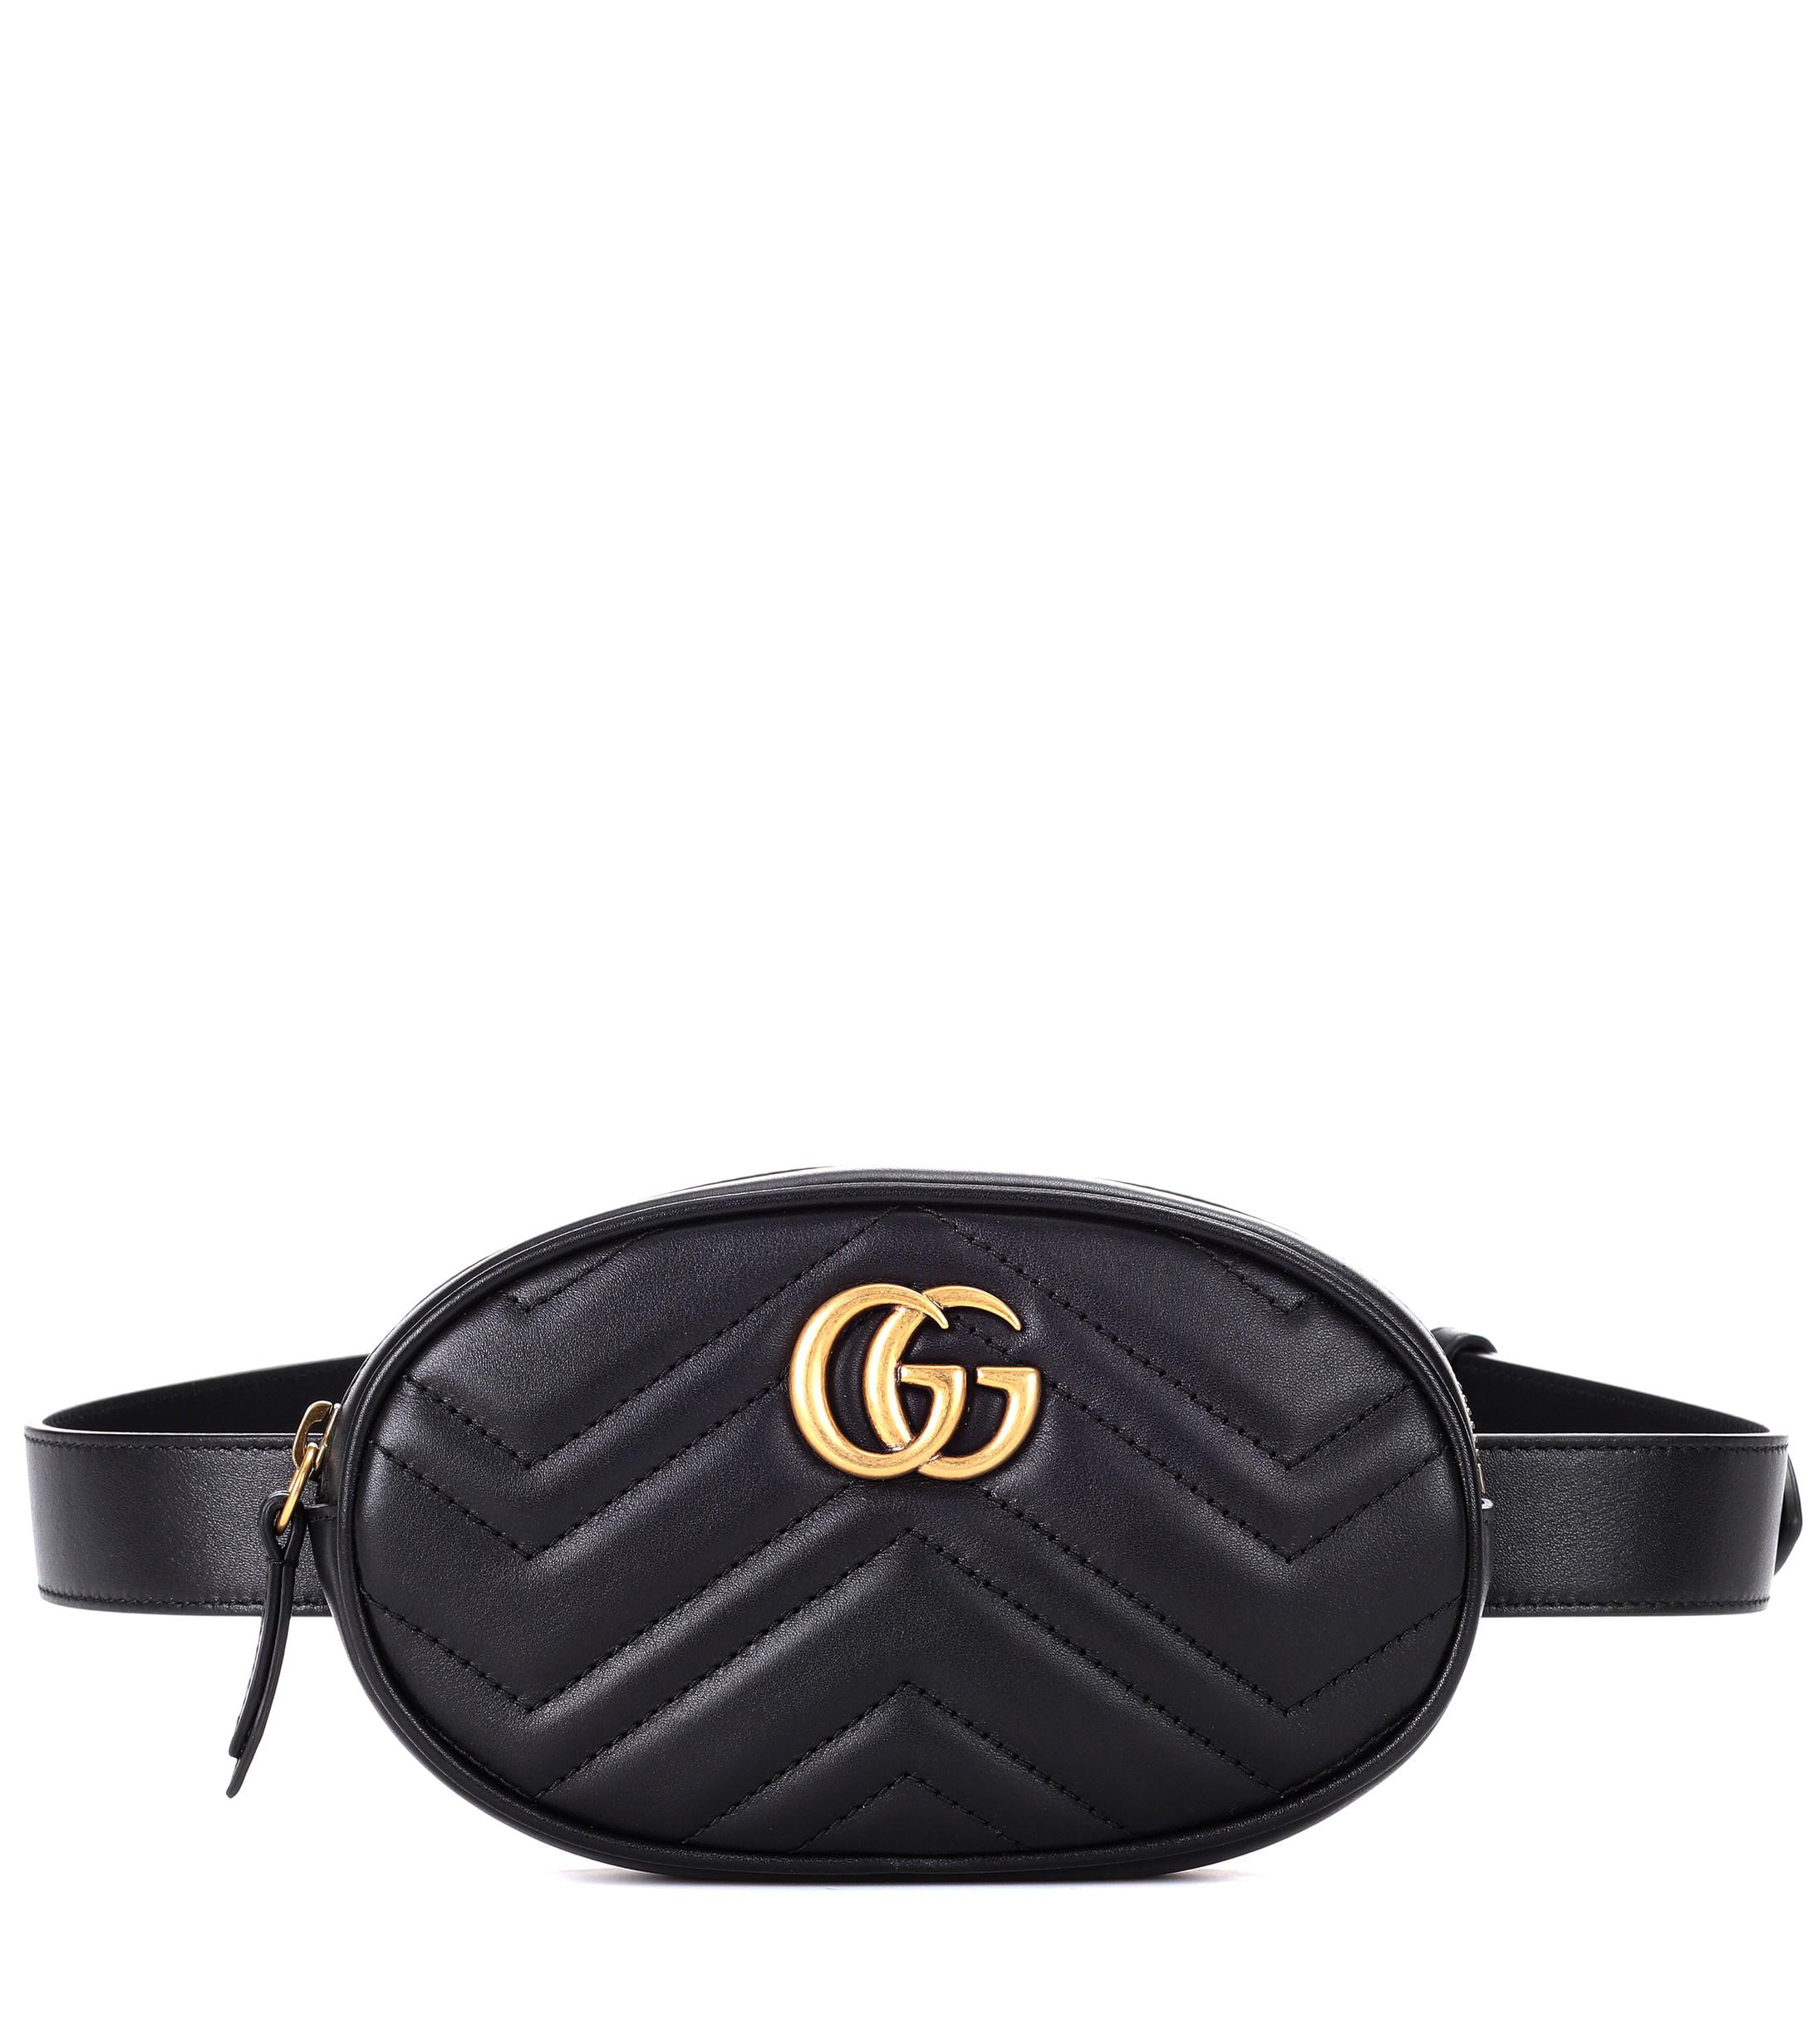 Gucci Belt Bag Black Leather | CINEMAS 93